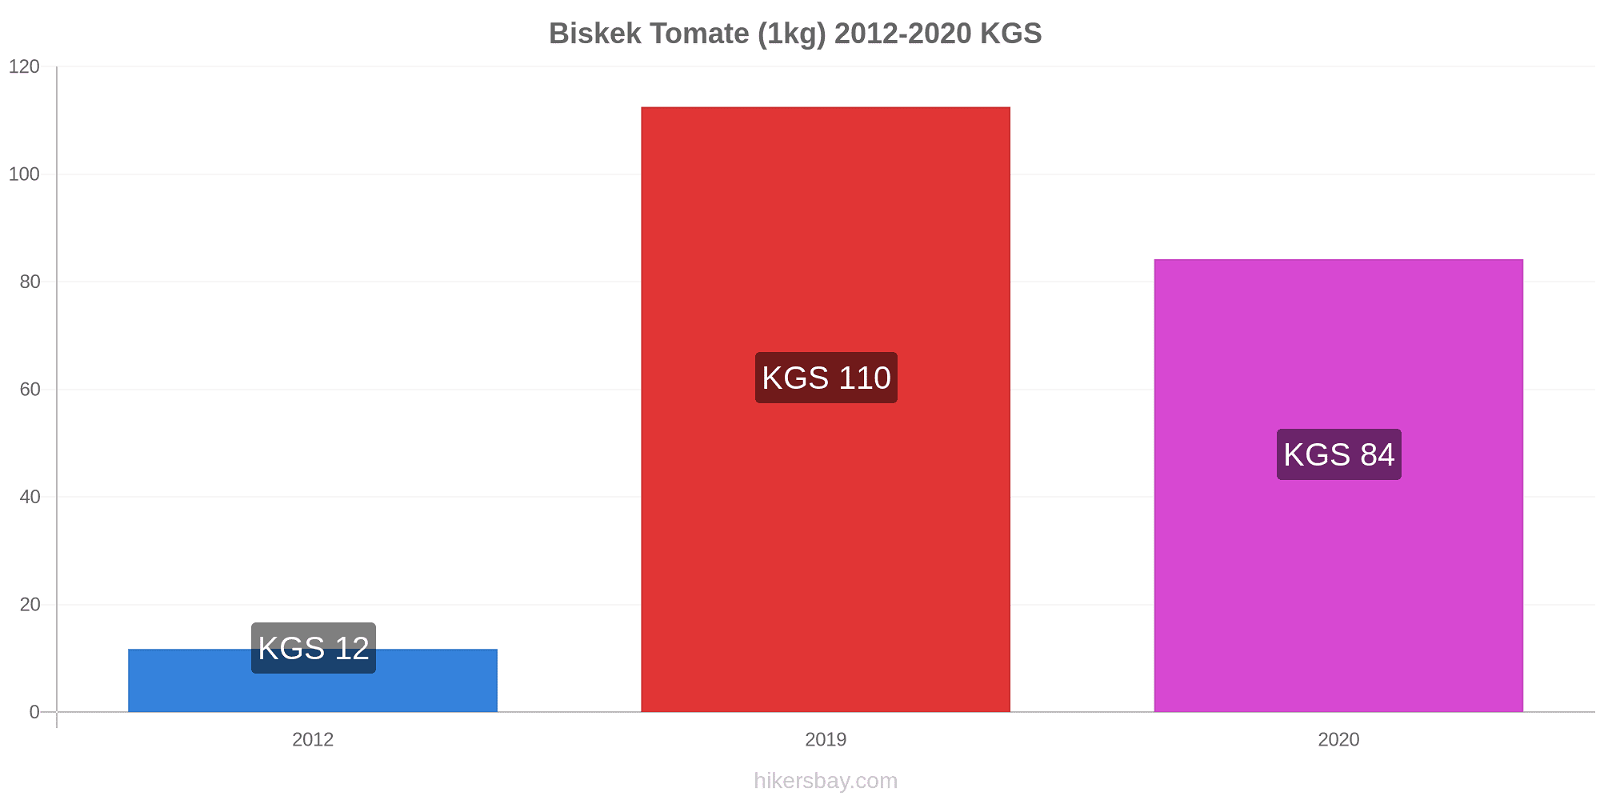 Biskek cambios de precios Tomate (1kg) hikersbay.com